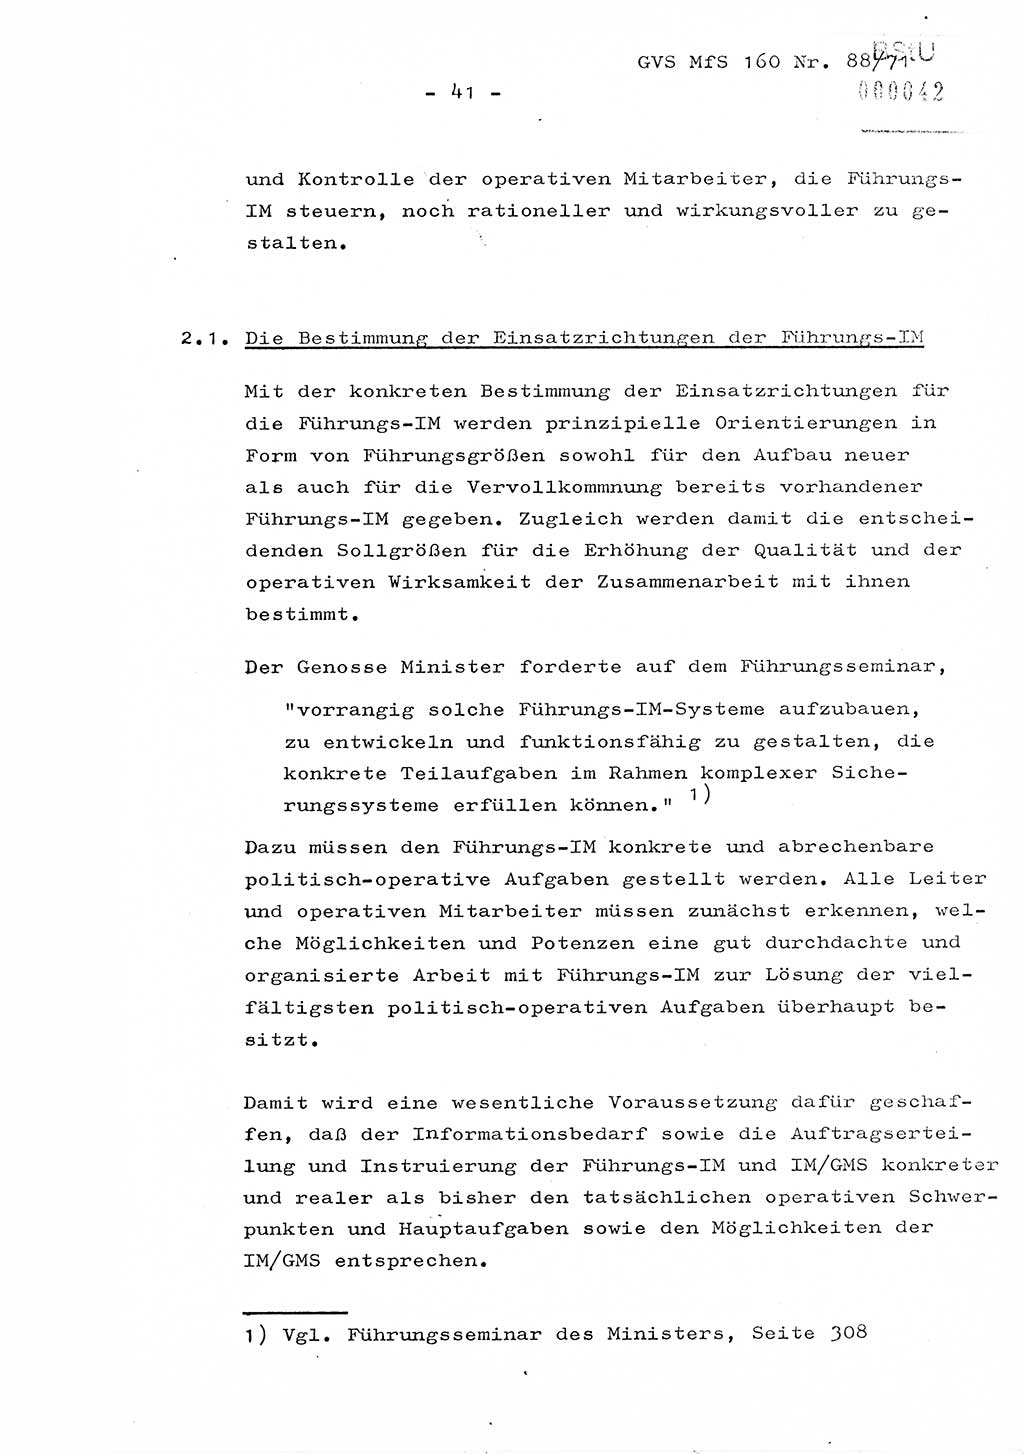 Dissertation Oberstleutnant Josef Schwarz (BV Schwerin), Major Fritz Amm (JHS), Hauptmann Peter Gräßler (JHS), Ministerium für Staatssicherheit (MfS) [Deutsche Demokratische Republik (DDR)], Juristische Hochschule (JHS), Geheime Verschlußsache (GVS) 160-88/71, Potsdam 1972, Seite 41 (Diss. MfS DDR JHS GVS 160-88/71 1972, S. 41)